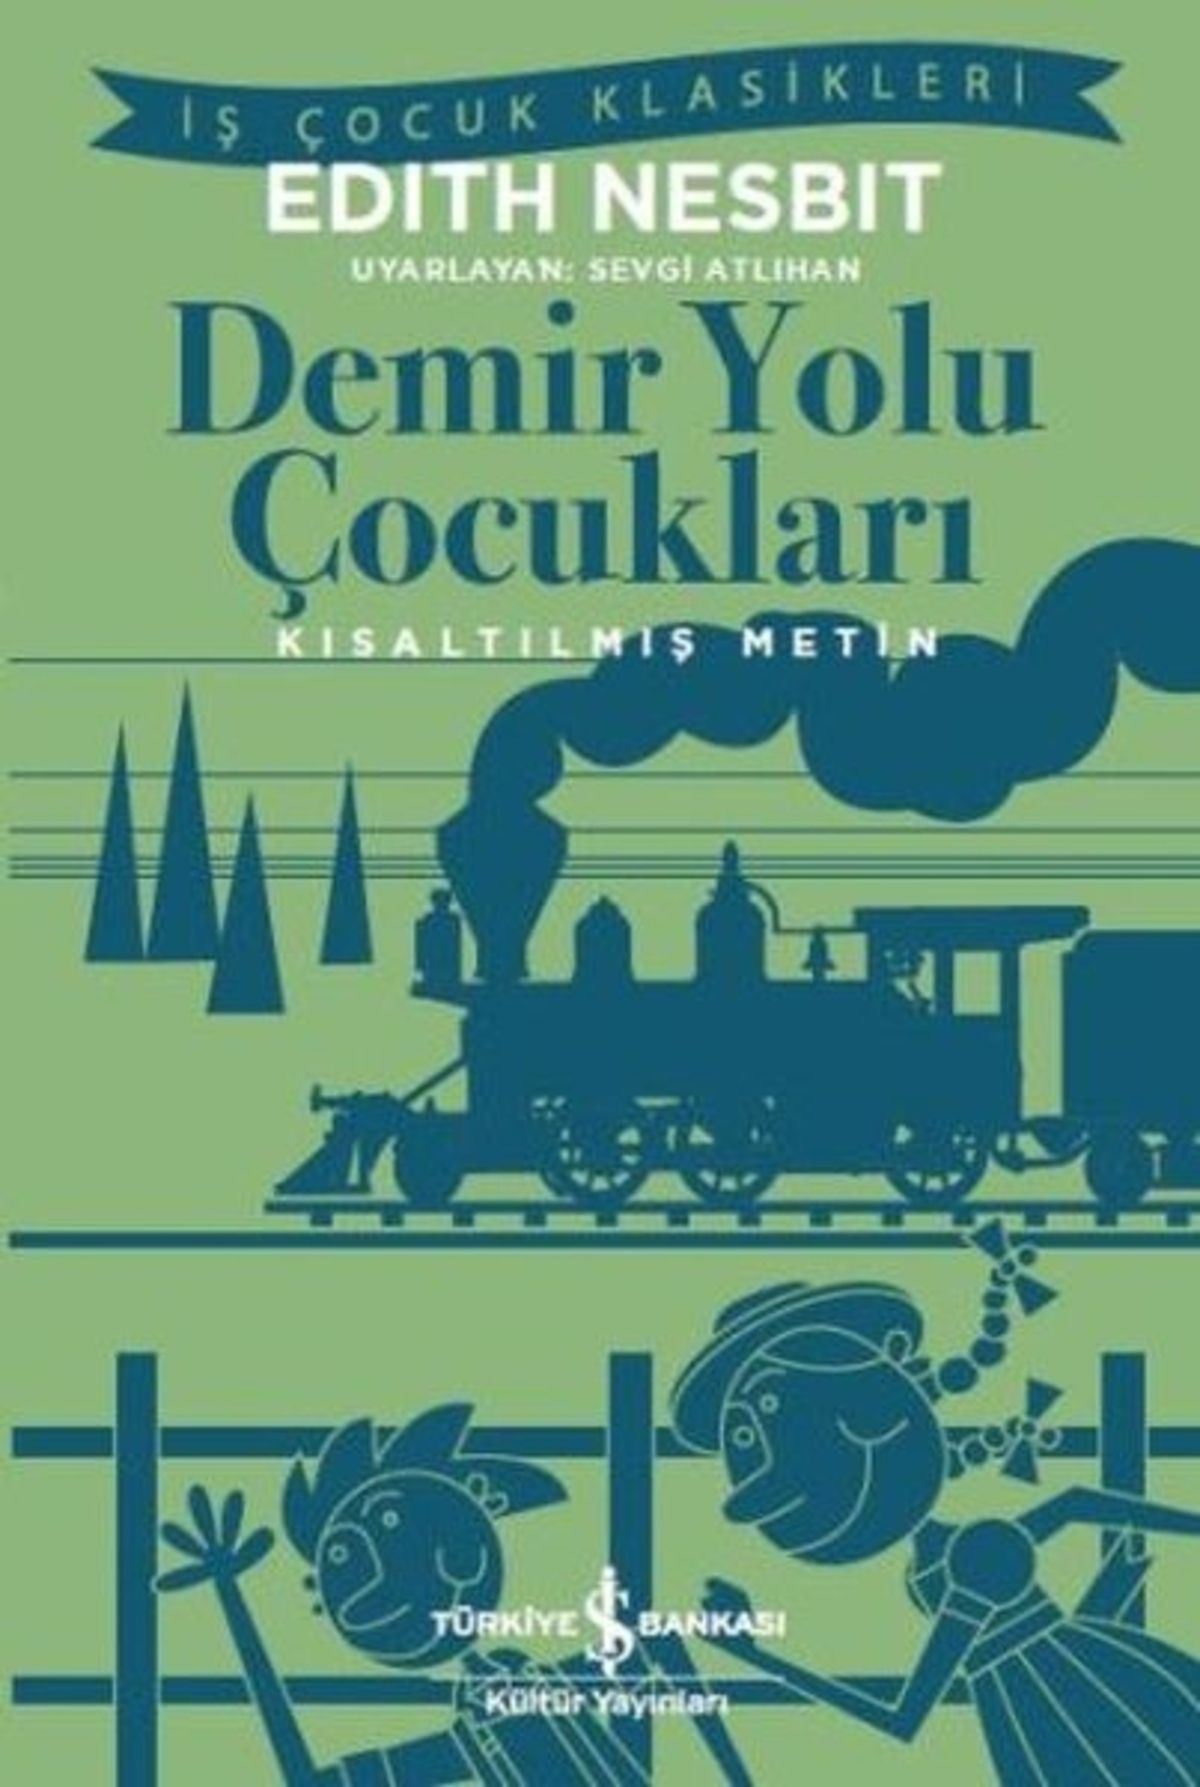 Türkiye İş Bankası Kültür Yayınları Demir Yolu Çocukları (KISALTILMIŞ METİN)